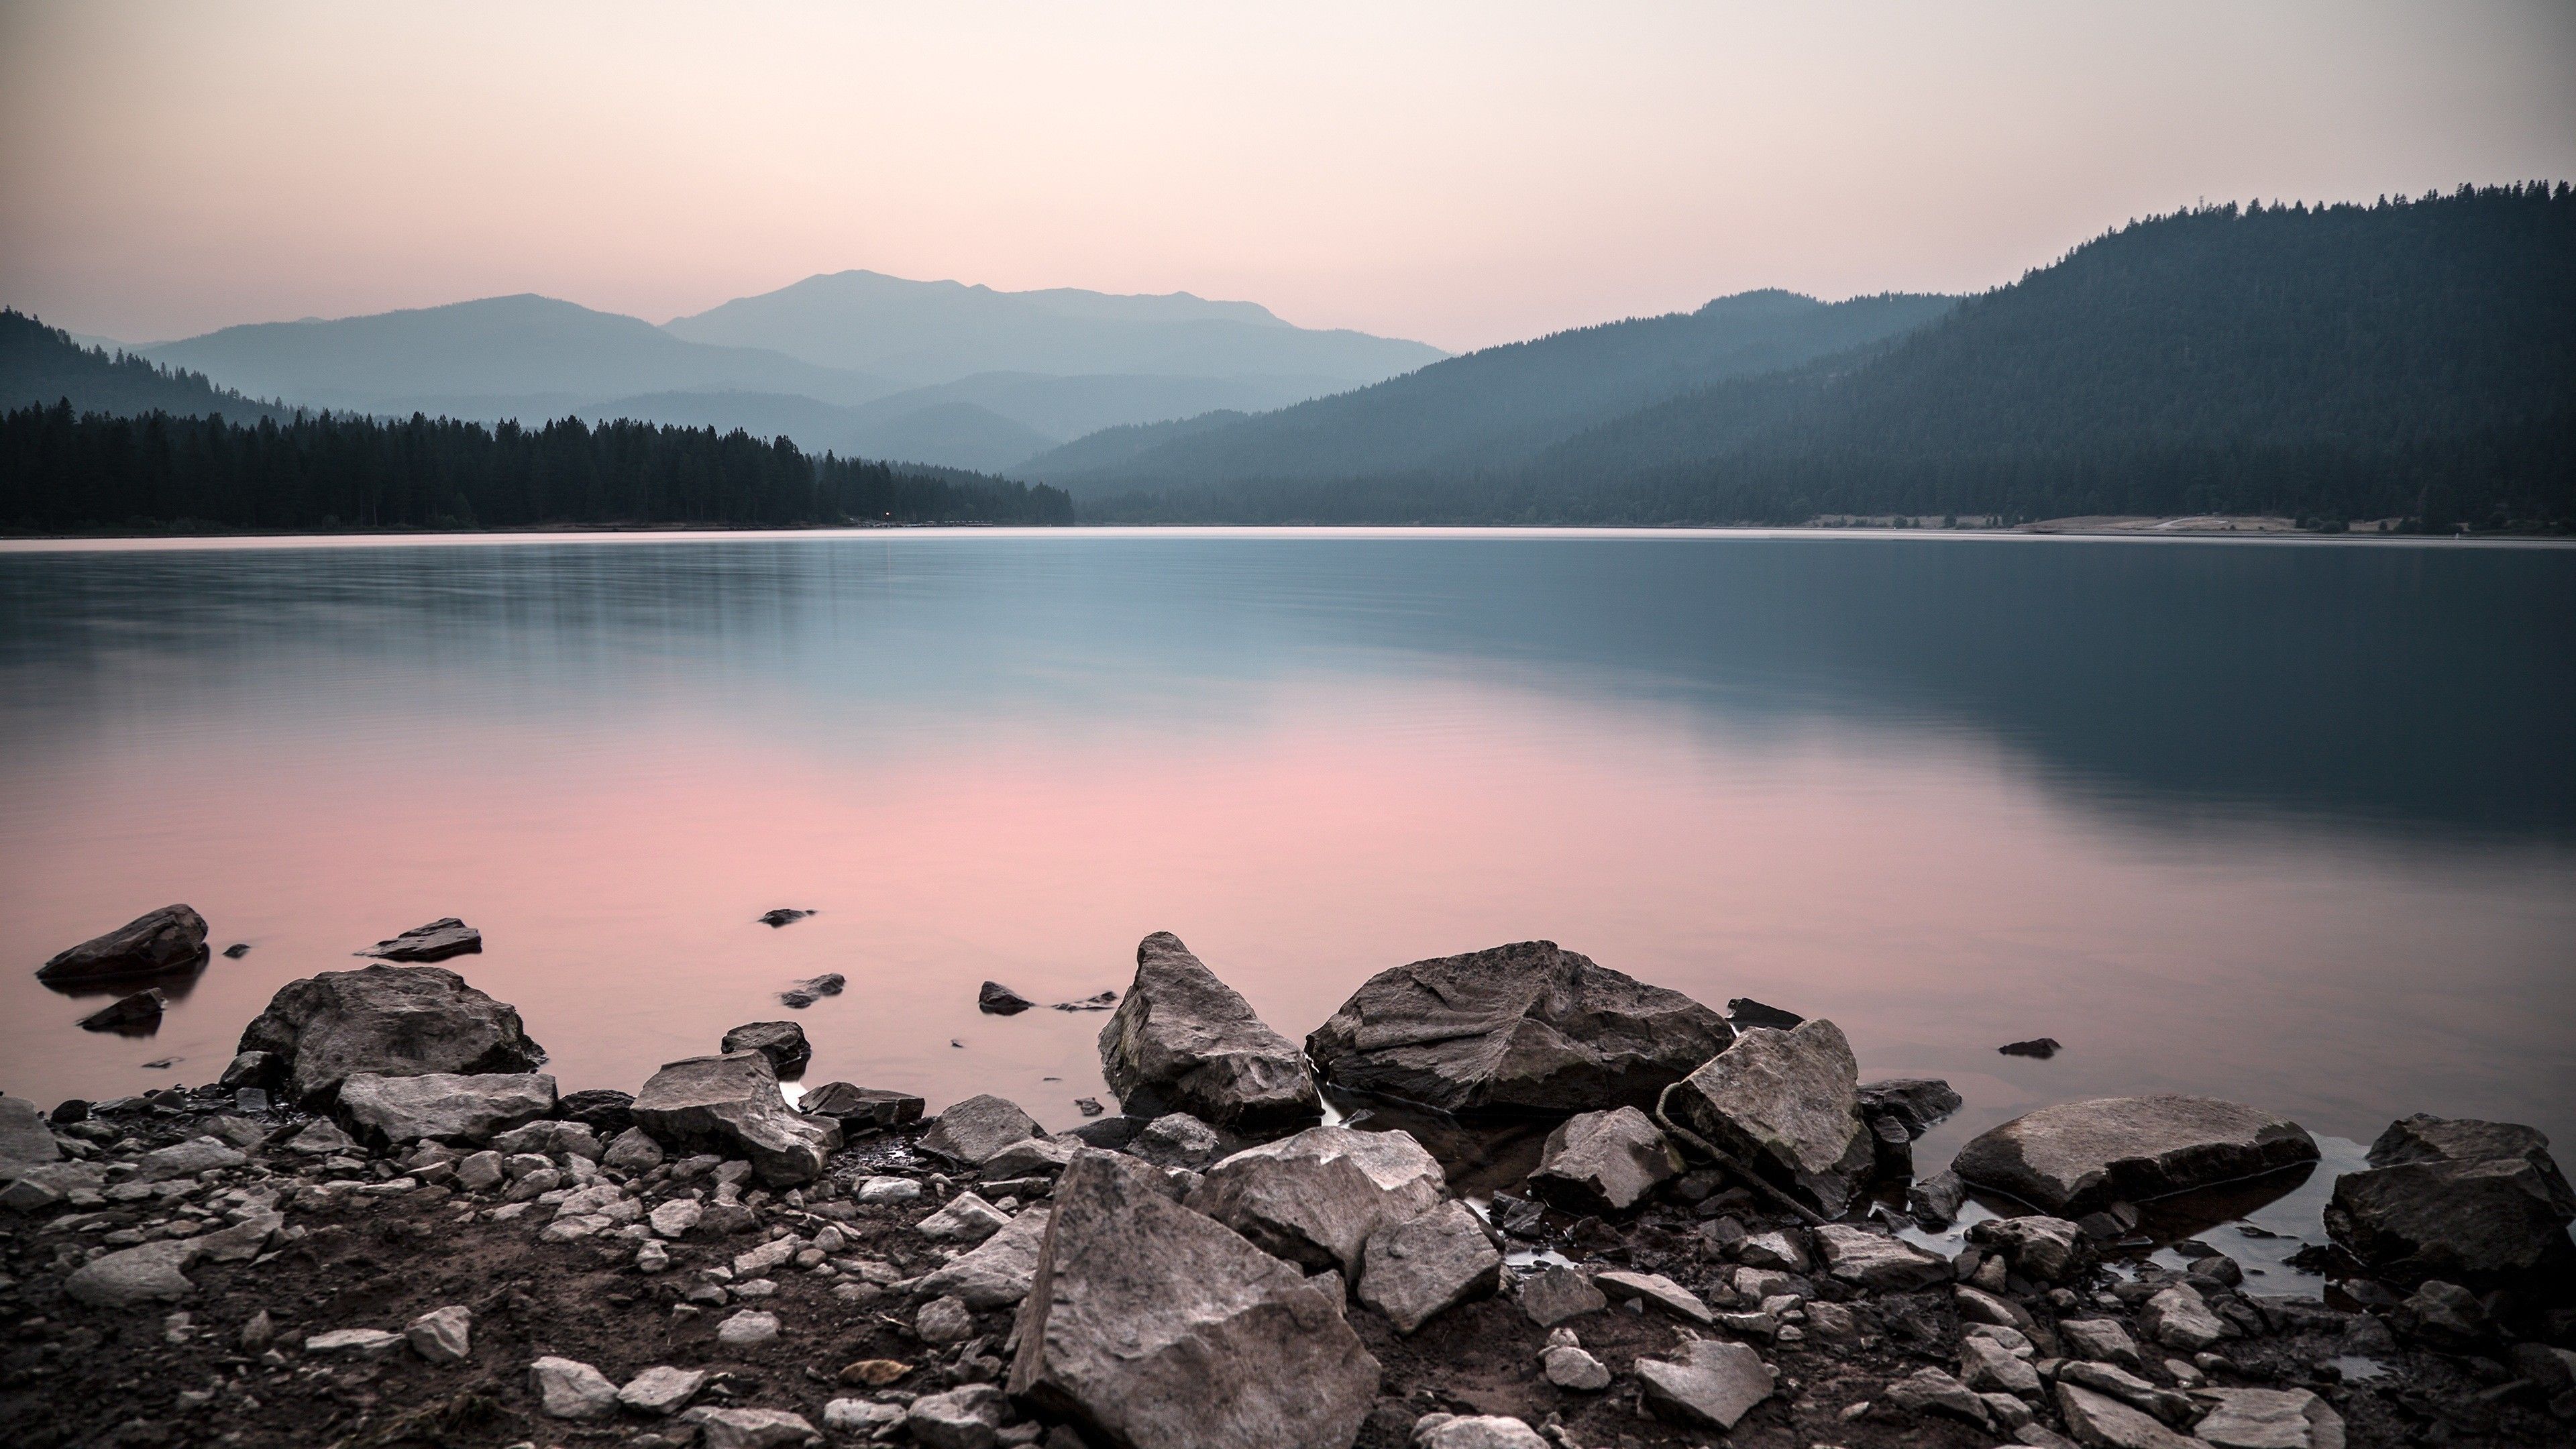 Res: 3840x Calm Mountain Lake 4K Ultra HD Desktop Wallpaper